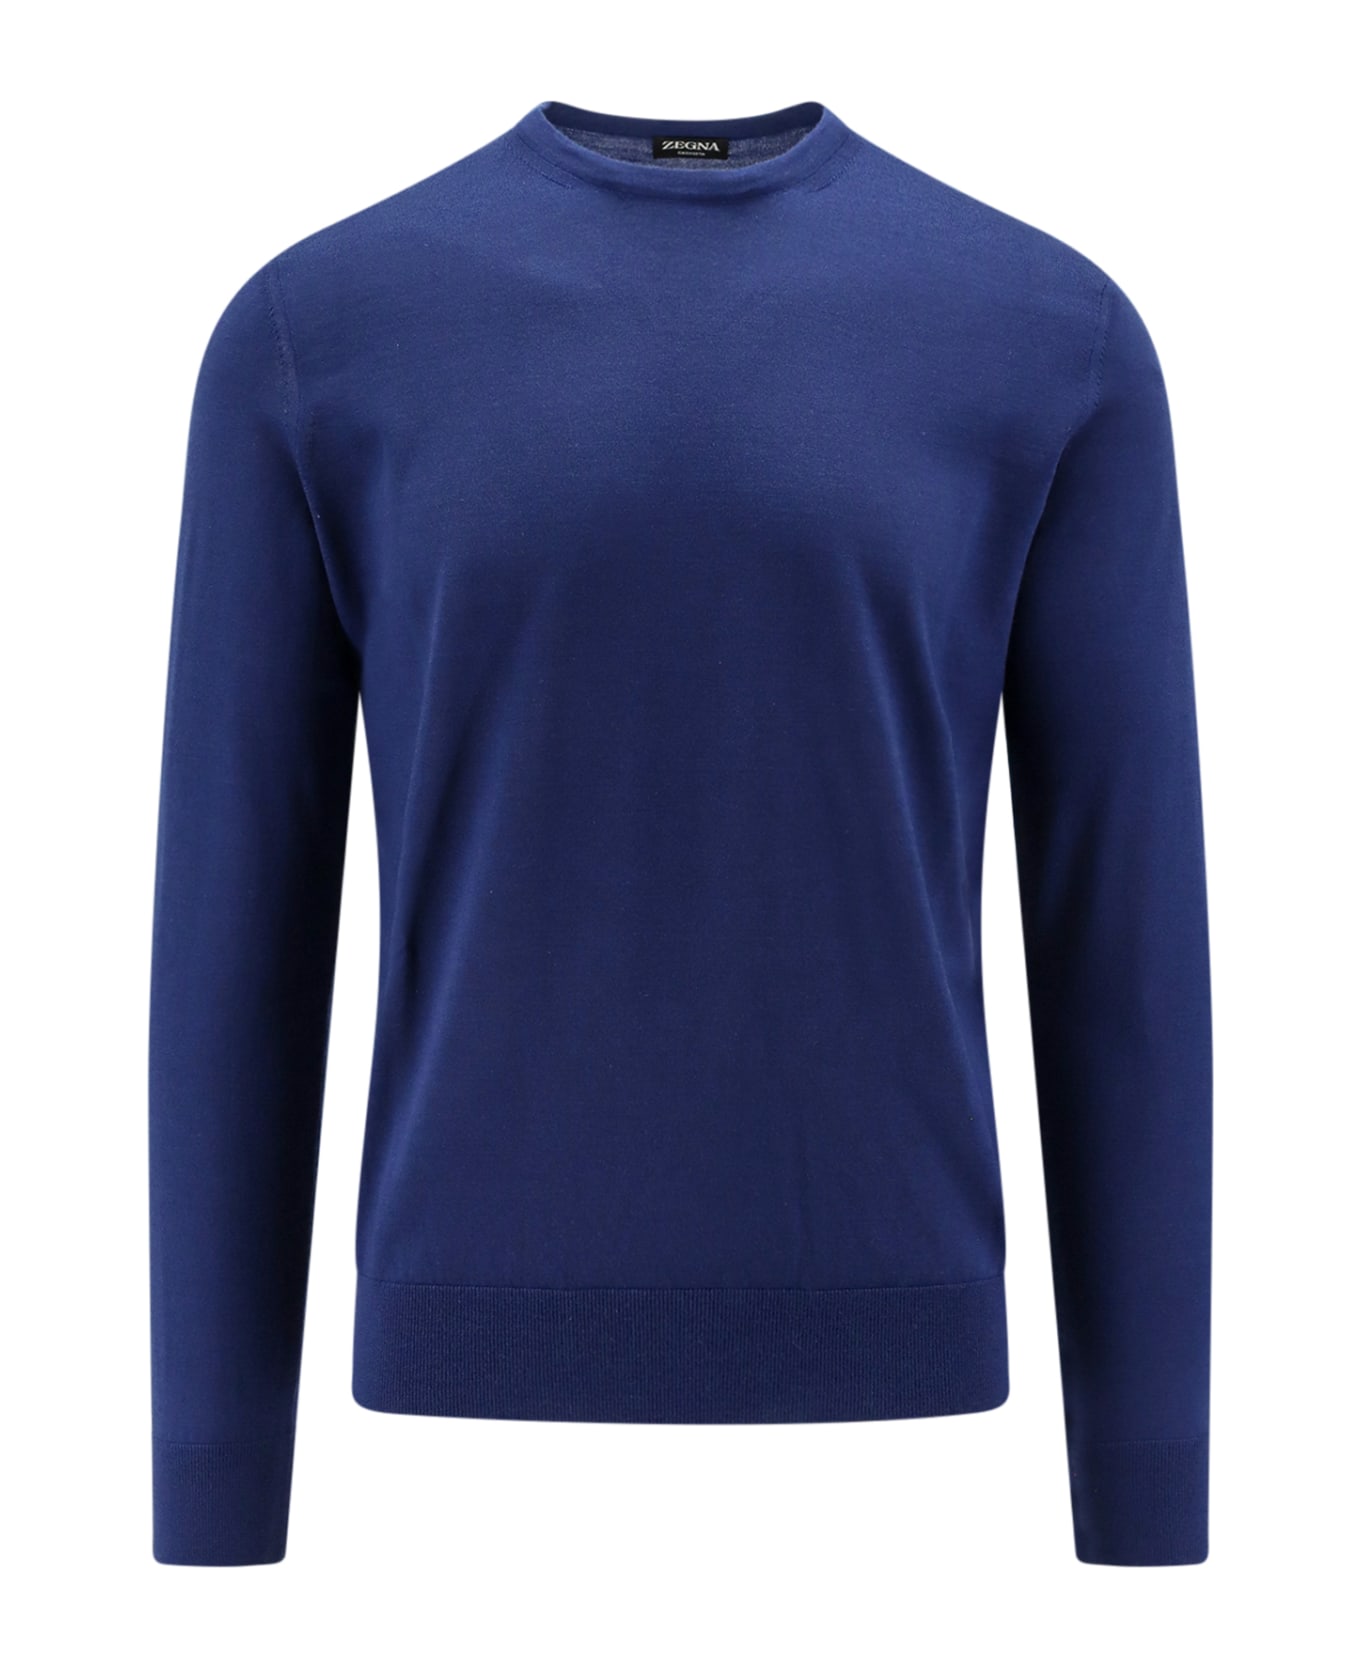 Zegna Sweater - Blue Medio Unito